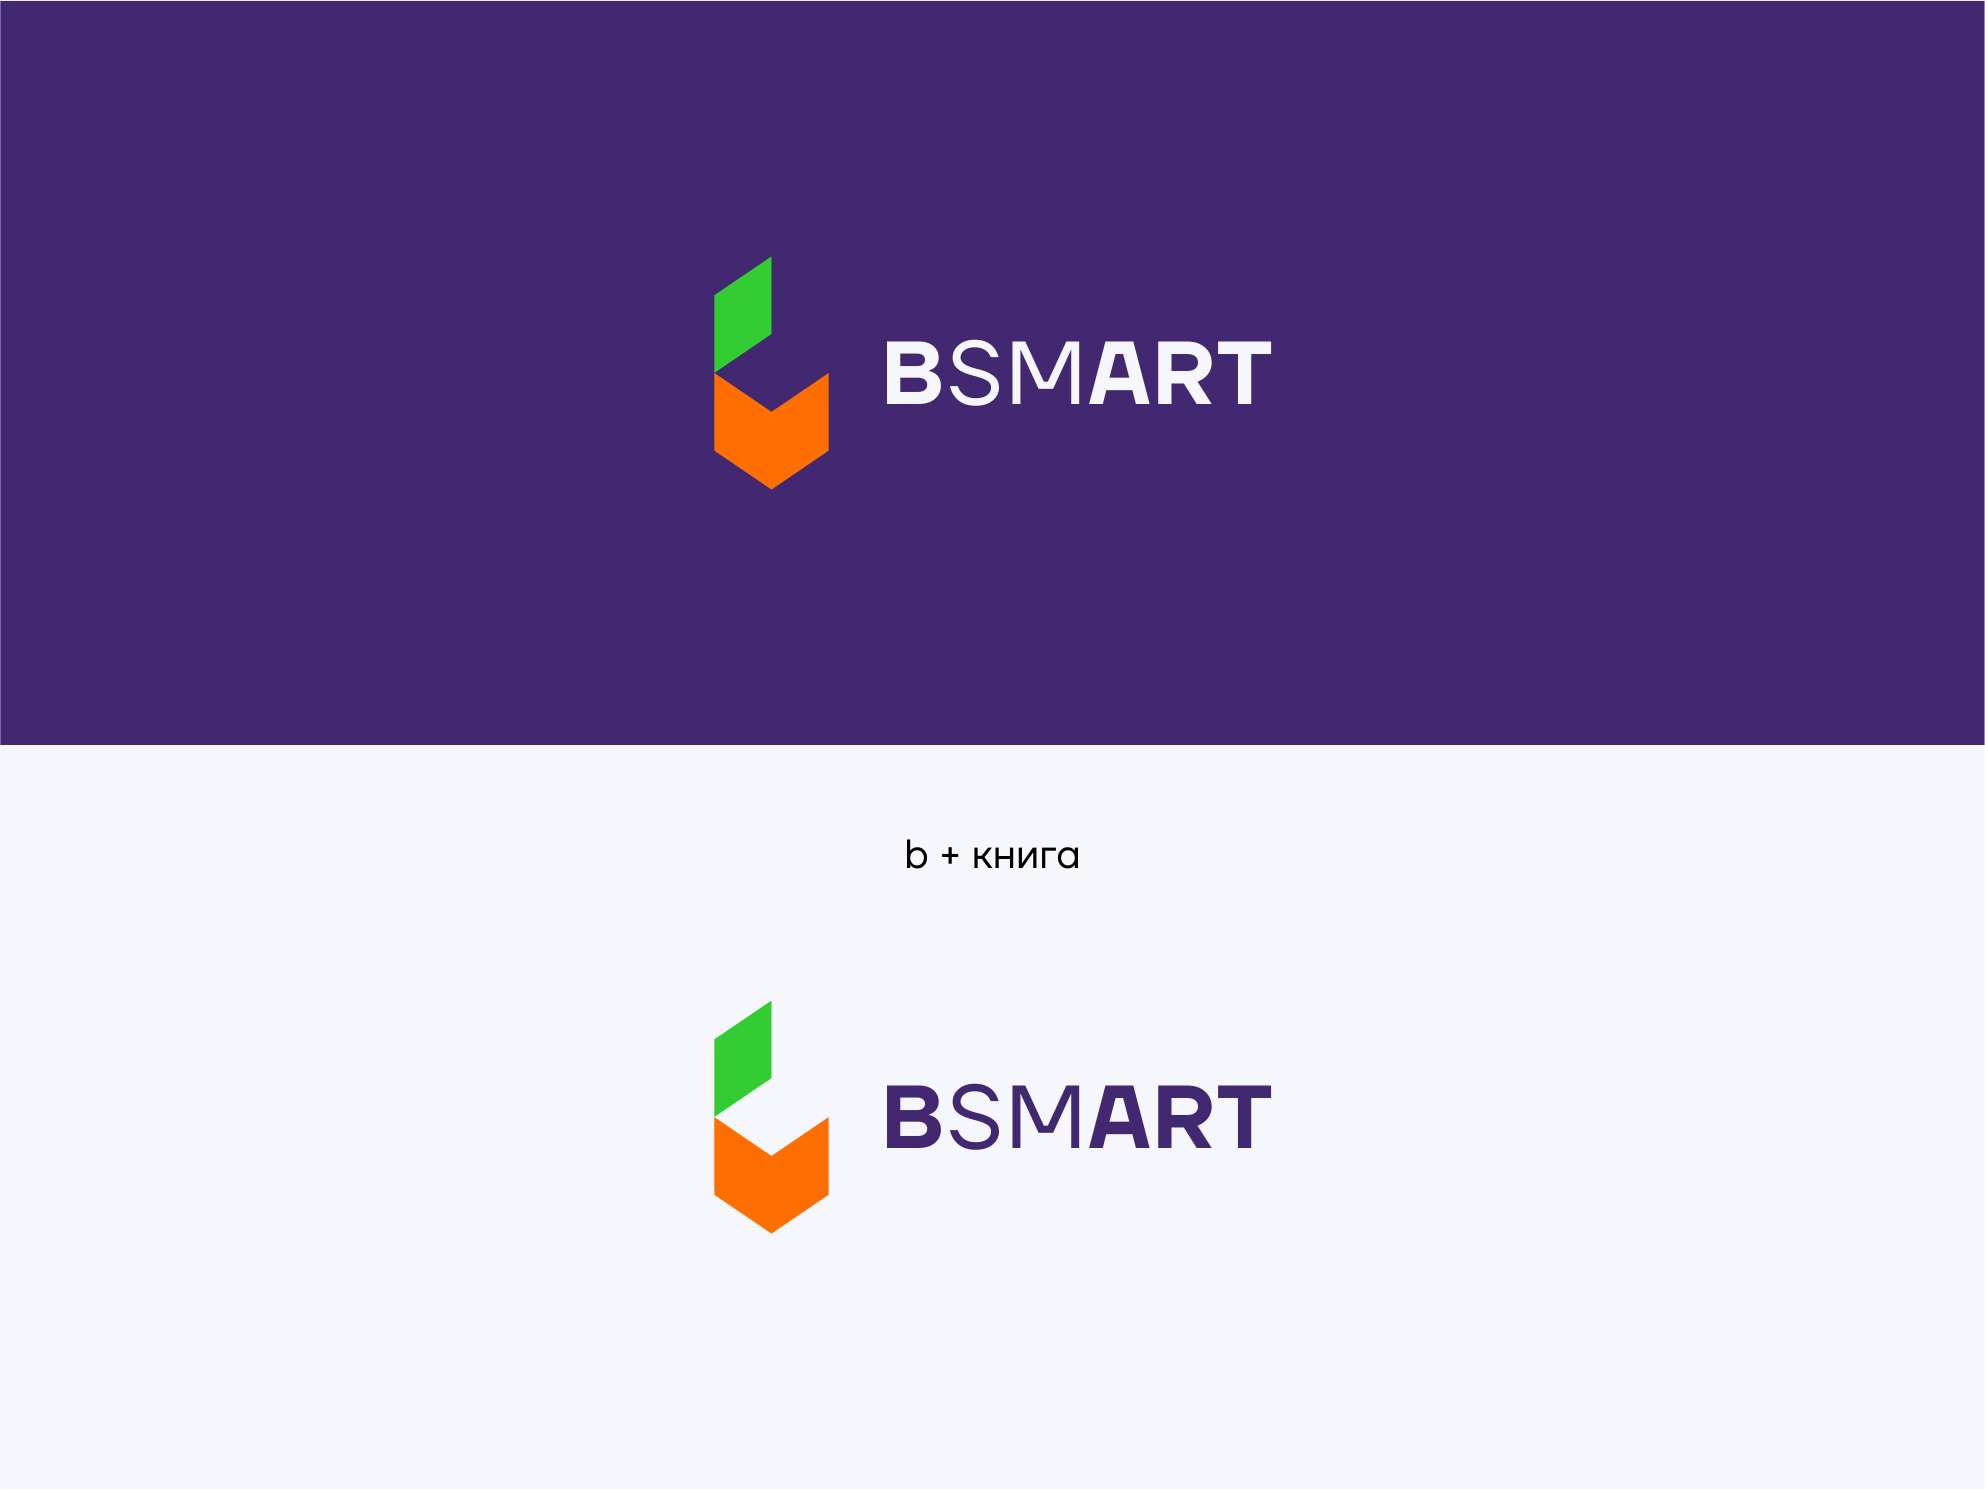 BSMART_1.png